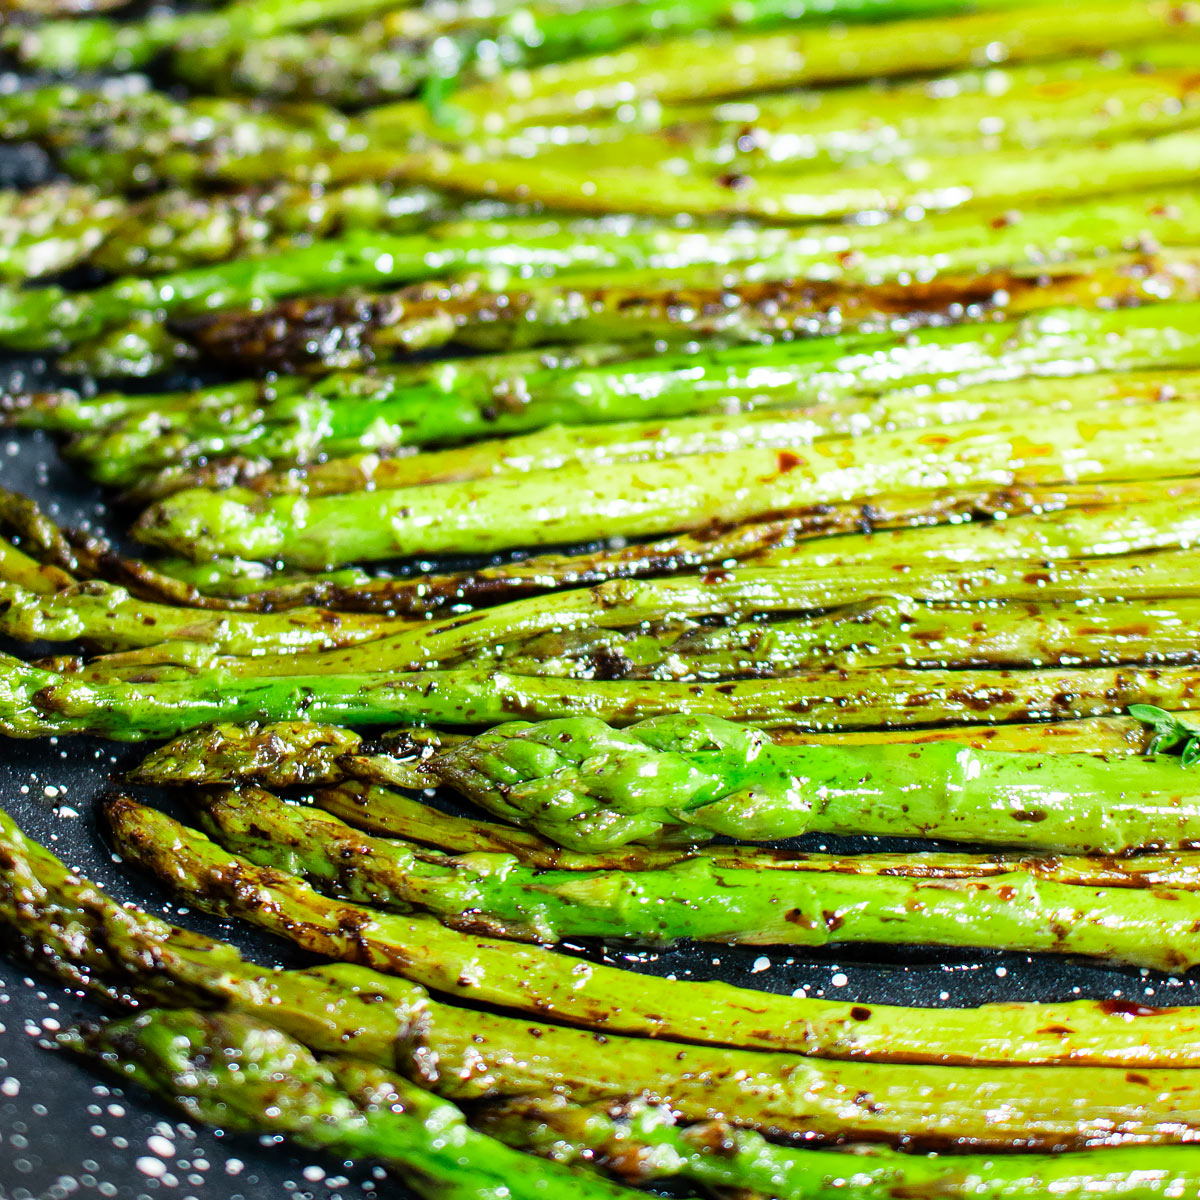 pan seared green asparagus